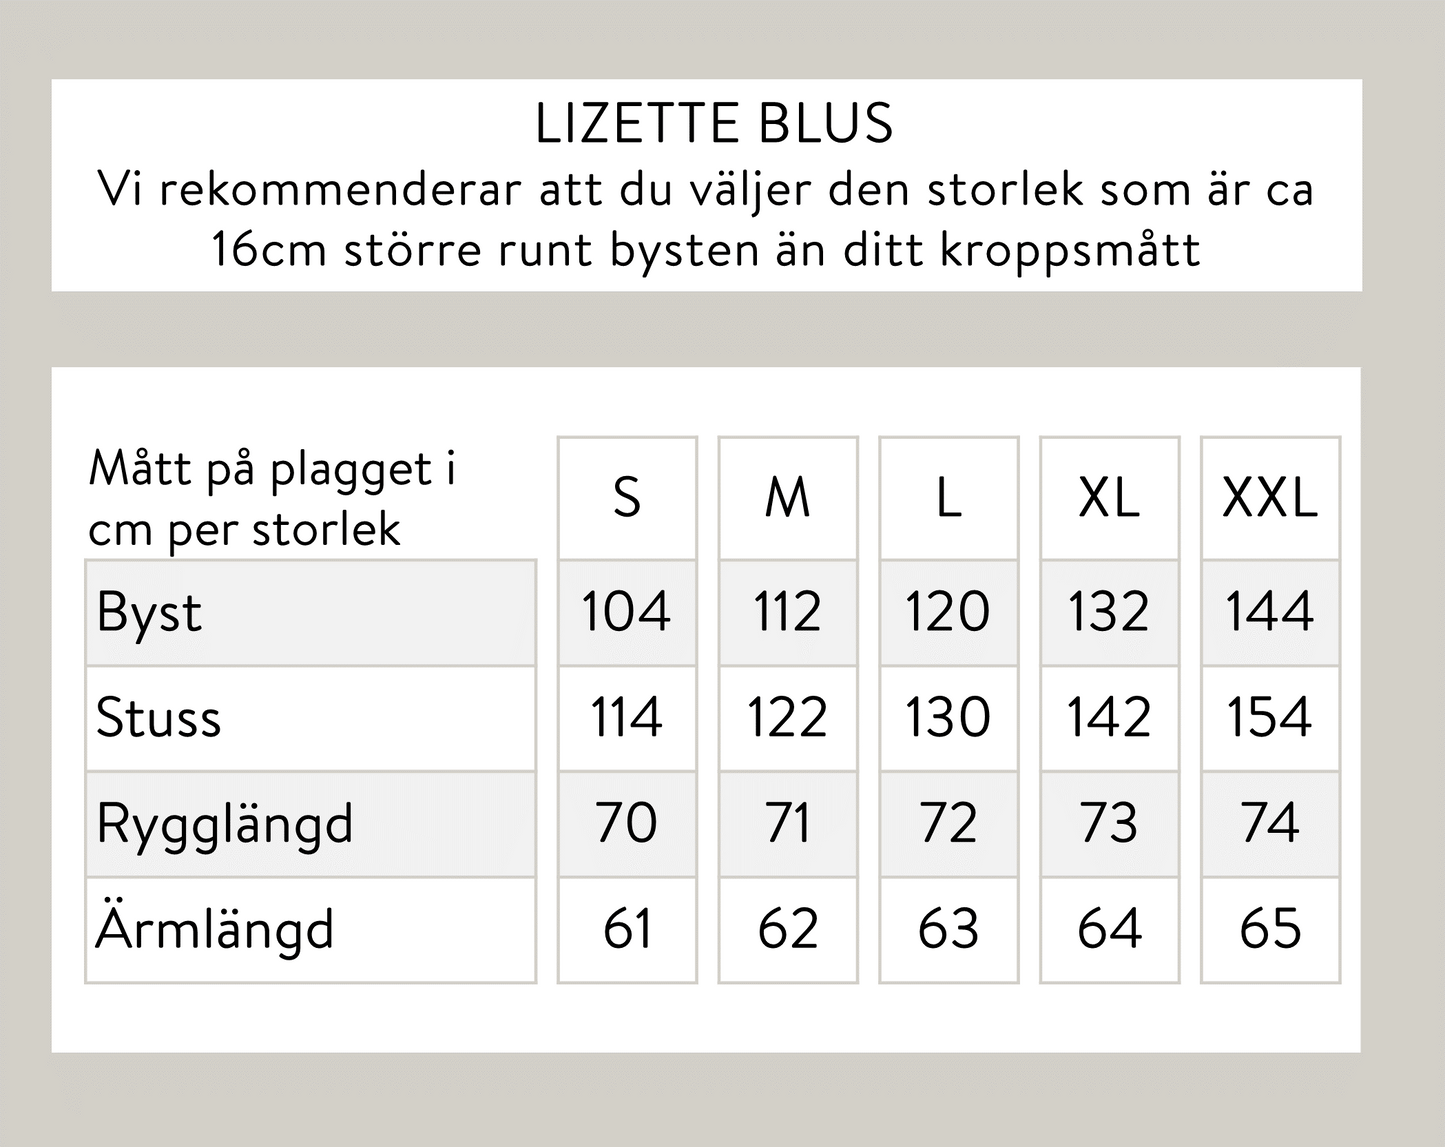 Lizette blus - svart